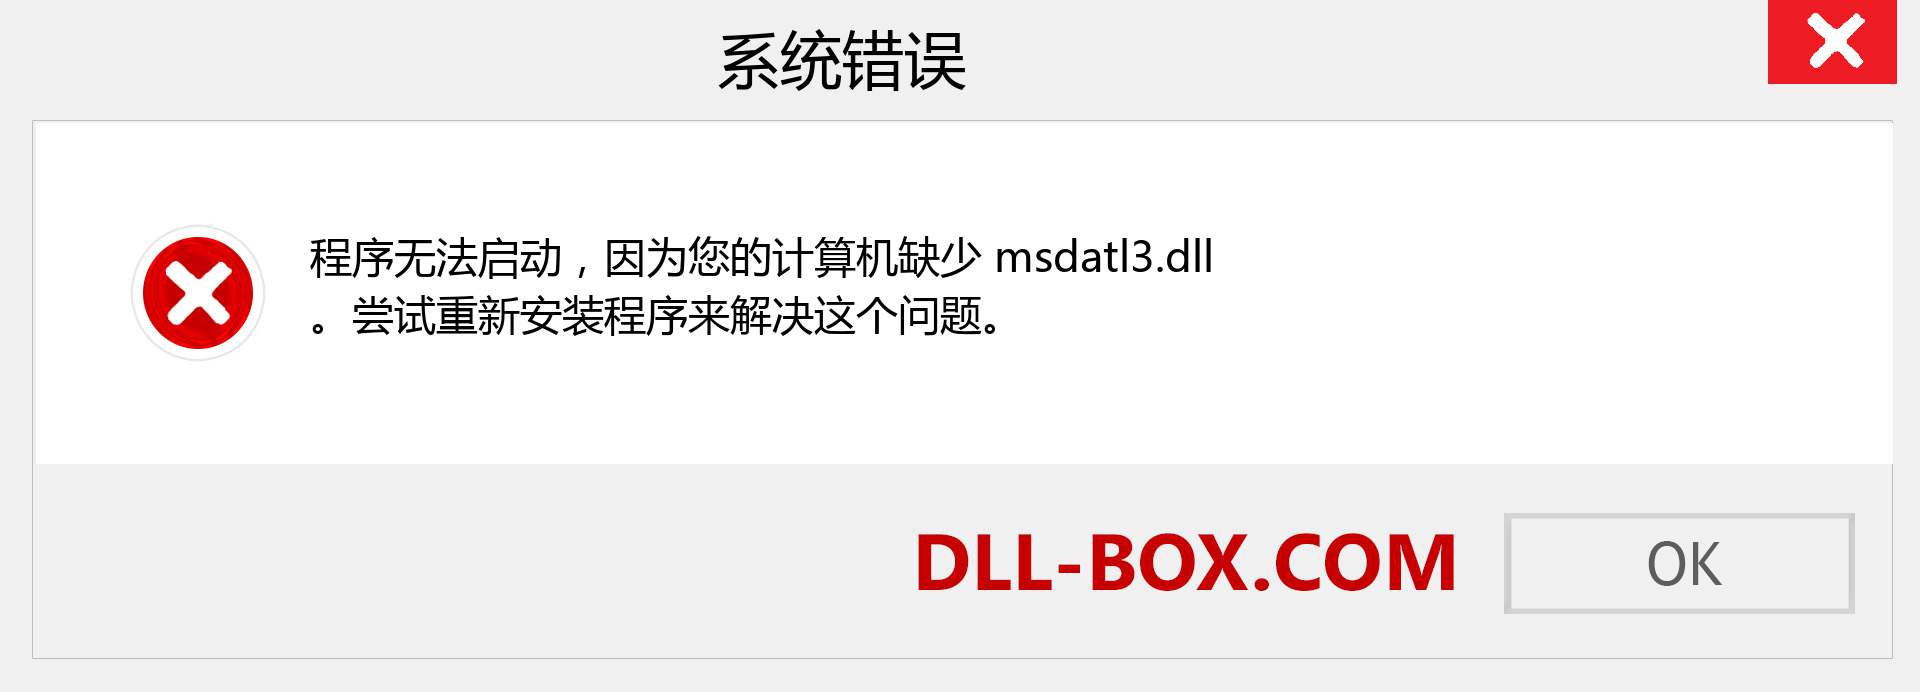 msdatl3.dll 文件丢失？。 适用于 Windows 7、8、10 的下载 - 修复 Windows、照片、图像上的 msdatl3 dll 丢失错误